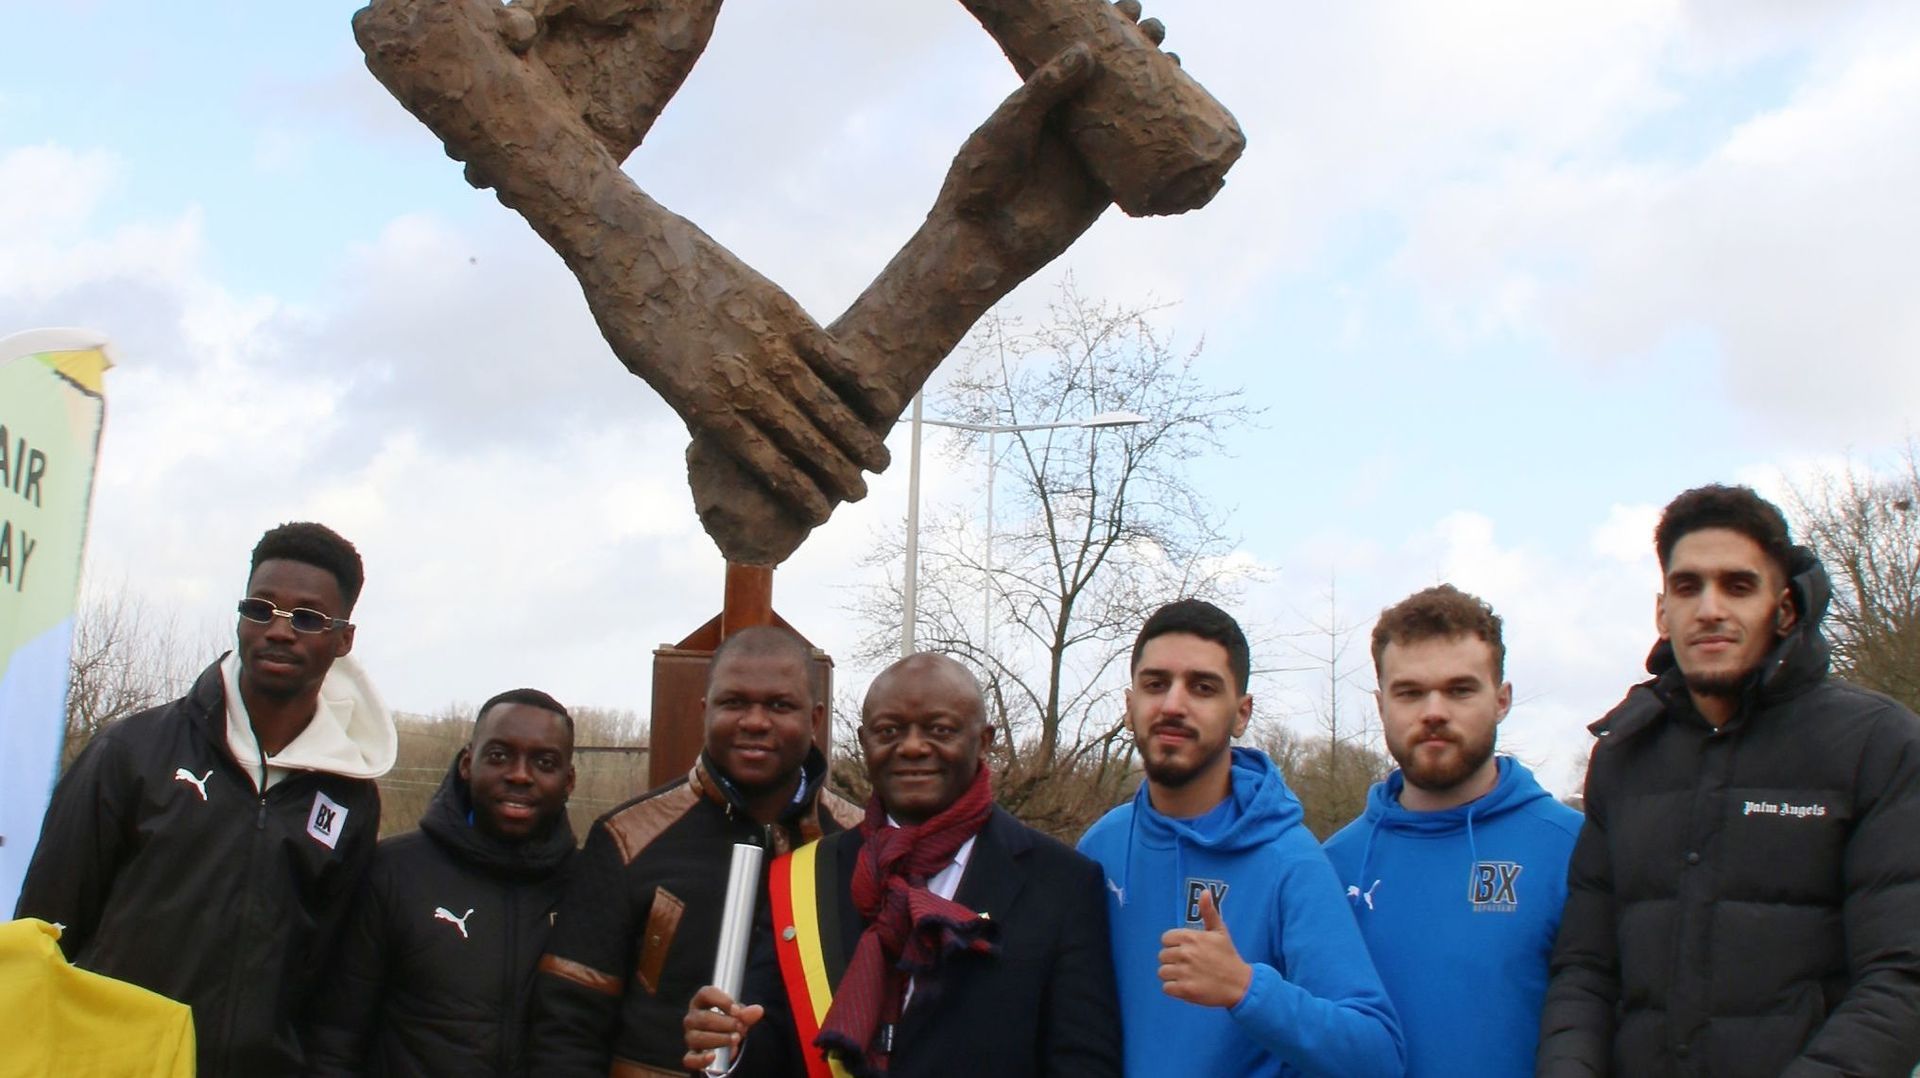 Pierre Kompany accompagné de jeunes du club BX Bruxelles, symbole du Fair-Play dans la commune